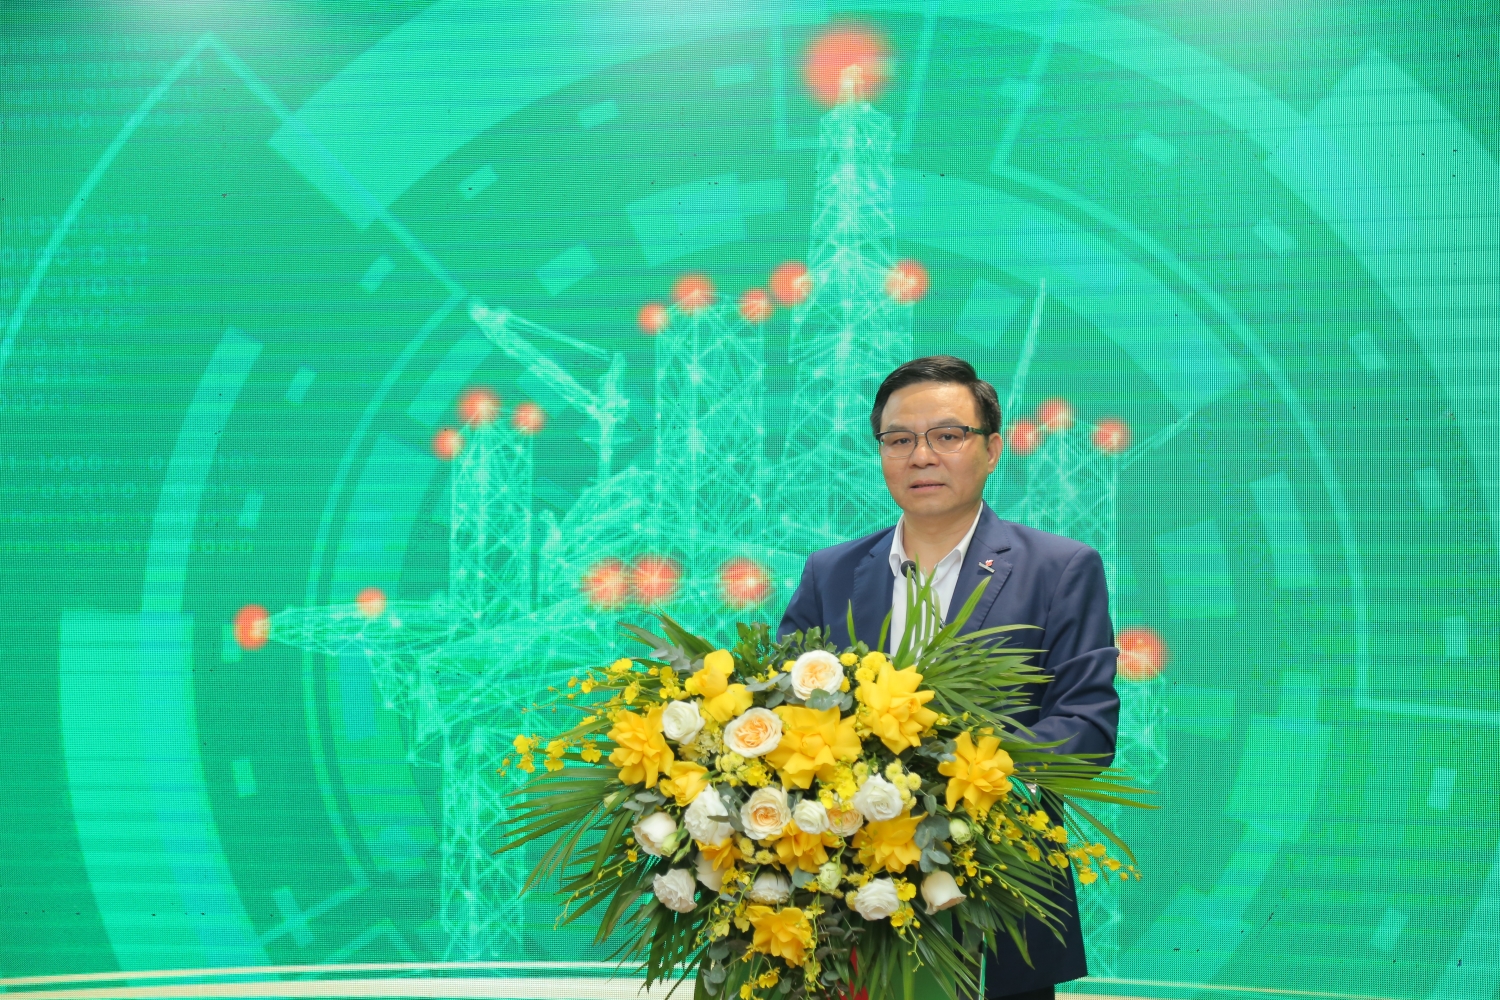 Tổng Giám đốc Petrovietnam Lê Mạnh Hùng: “Chuyển đổi số là xu thế tất yếu không ai đứng ngoài cuộc””